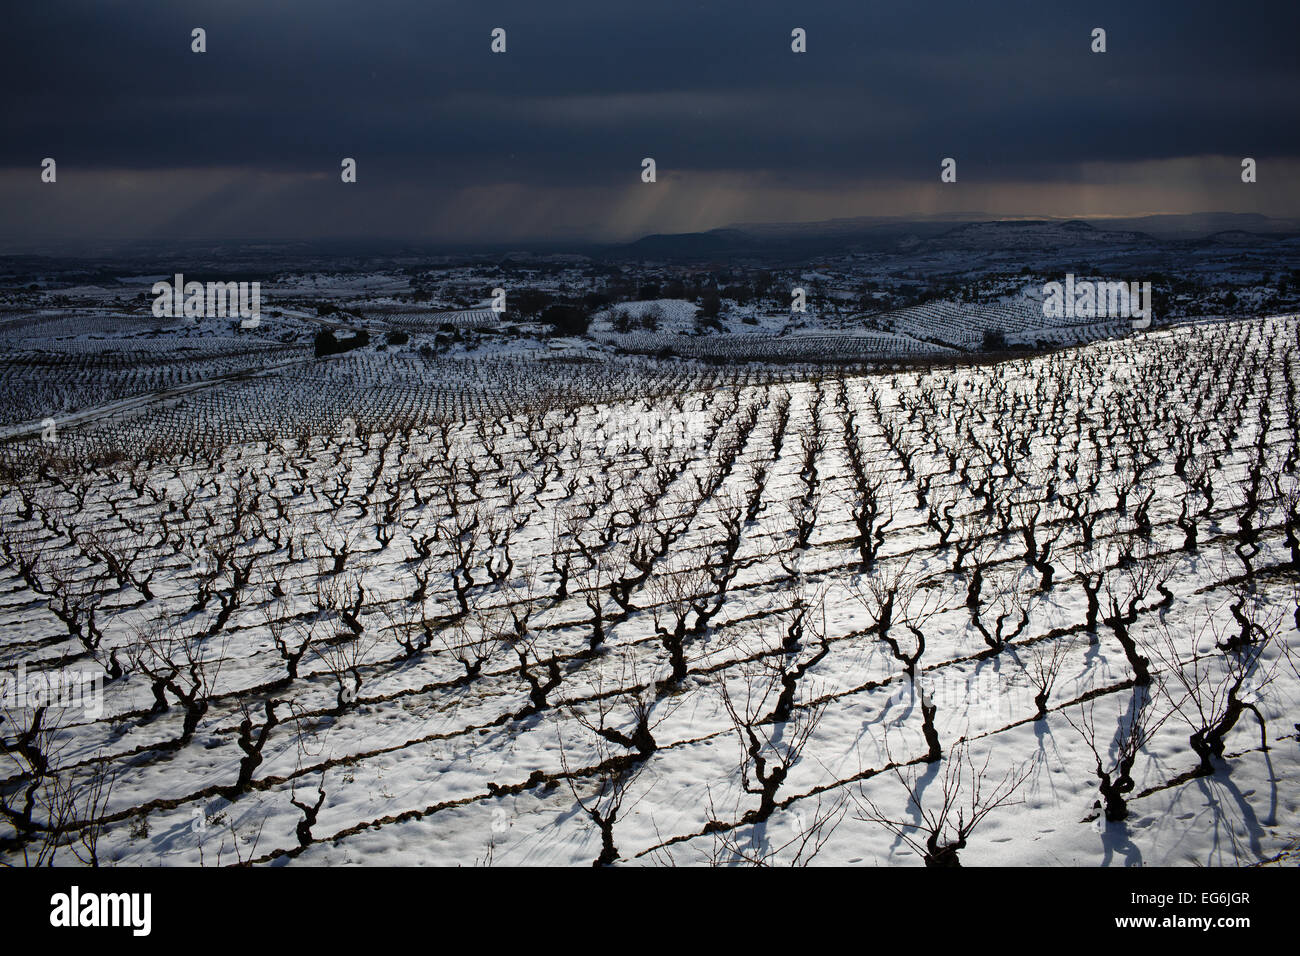 02.08.15 Schnee bedeckten Rioja Weinberge in der Nähe von Samaniego, Alava, Baskisches Land, Spanien. Foto von James Sturcke. Stockfoto